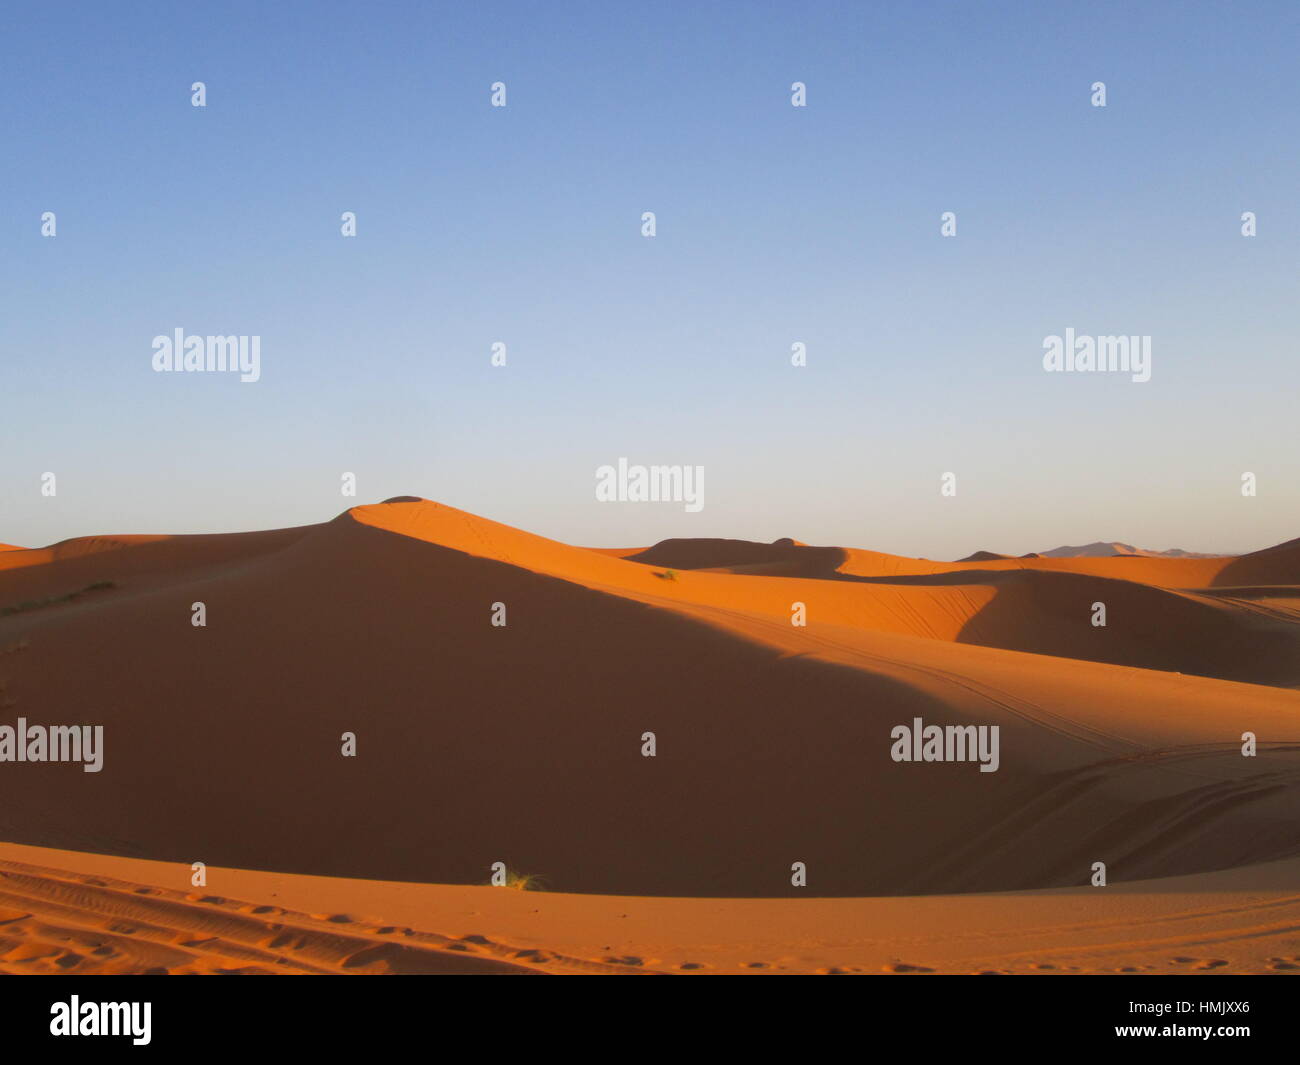 Dans le grand sud du Sahara, trekking de chameau à un Touareg desert camp. Le Maroc, Merzouga. La randonnée chamelière déserts de sud marocain Banque D'Images